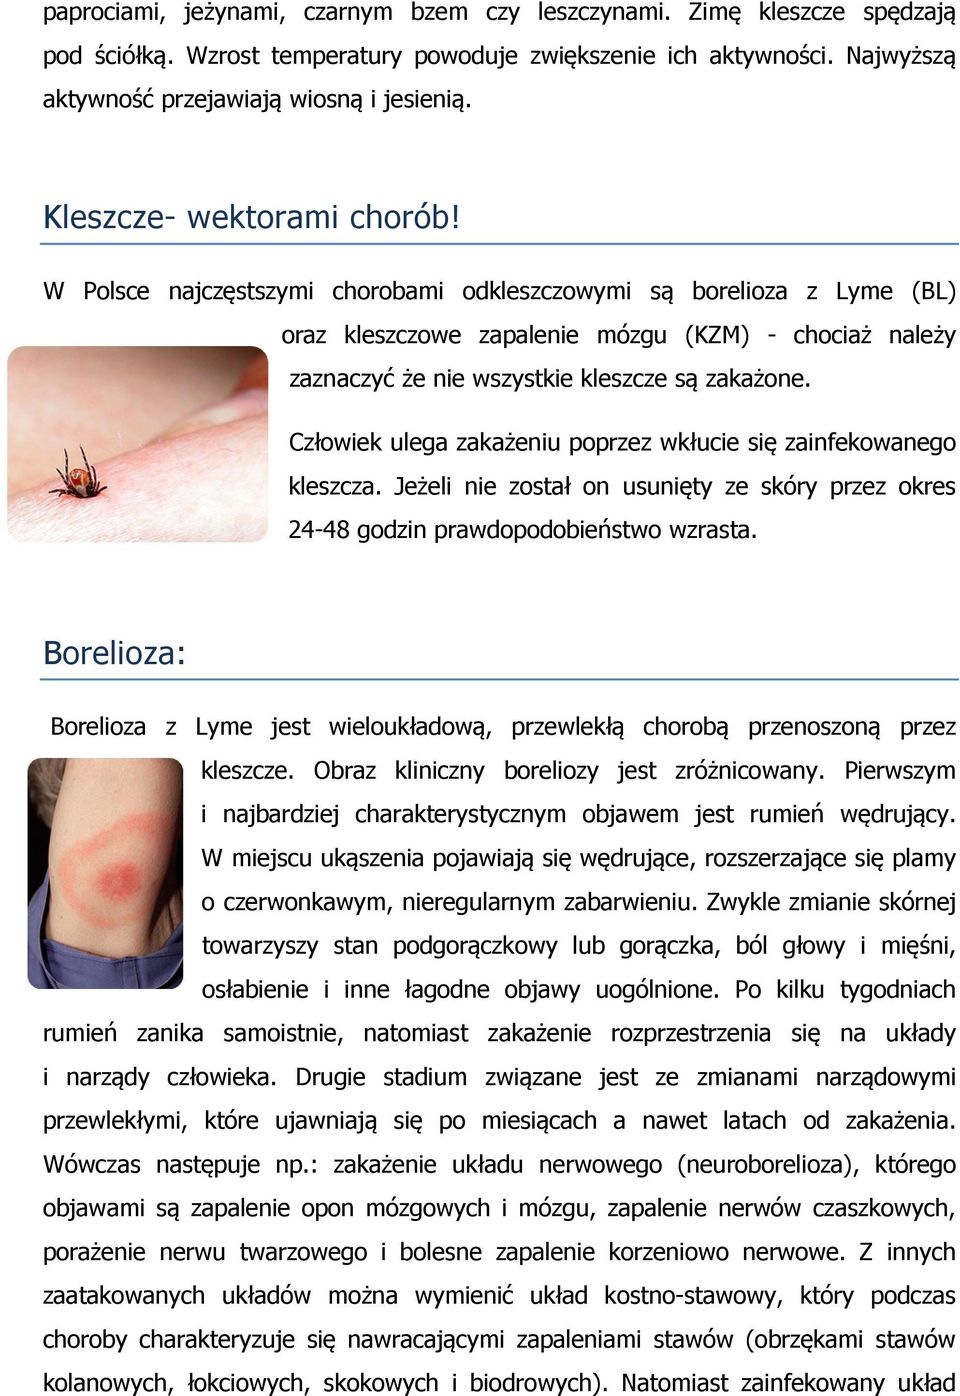 W Polsce najczęstszymi chorobami odkleszczowymi są borelioza z Lyme (BL) oraz kleszczowe zapalenie mózgu (KZM) - chociaż należy zaznaczyć że nie wszystkie kleszcze są zakażone.